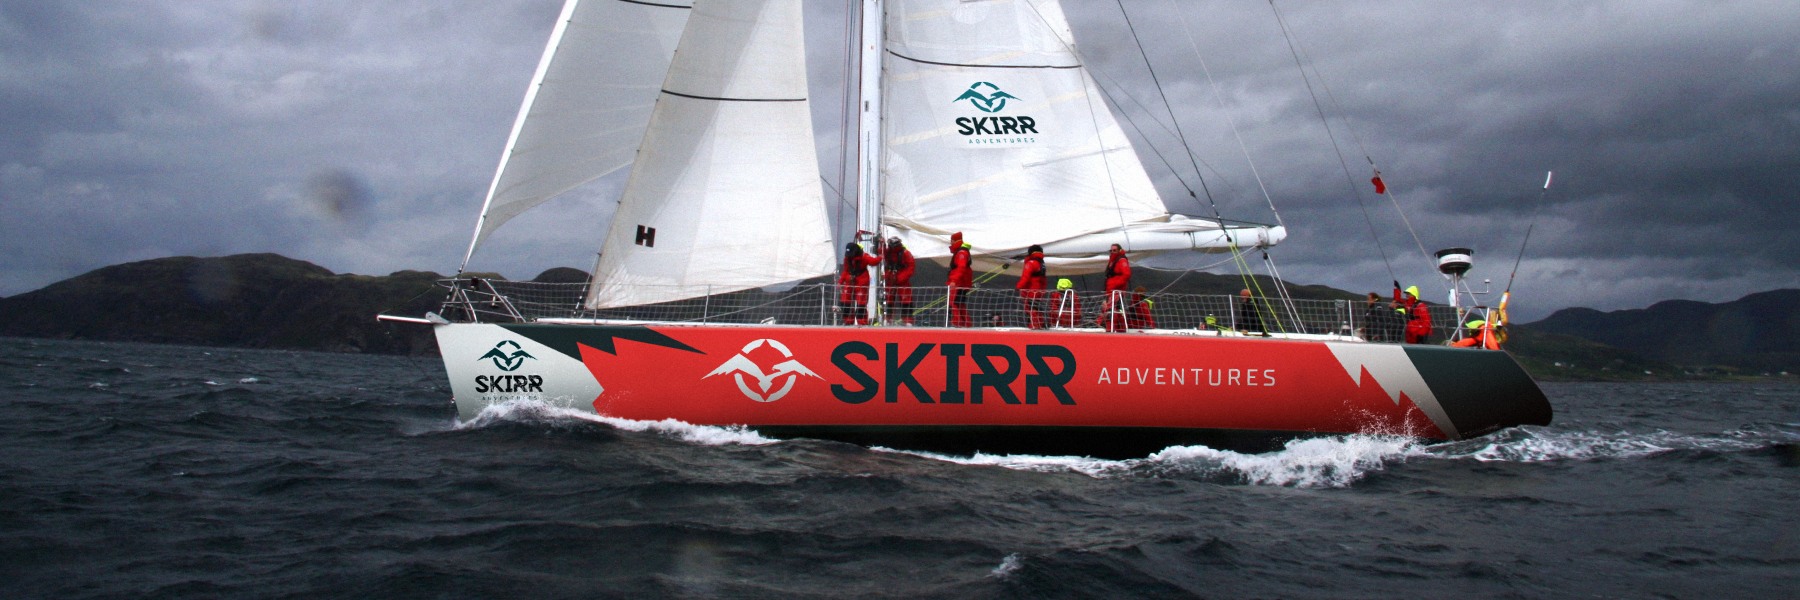 Skirr Adventures 68 foot yacht